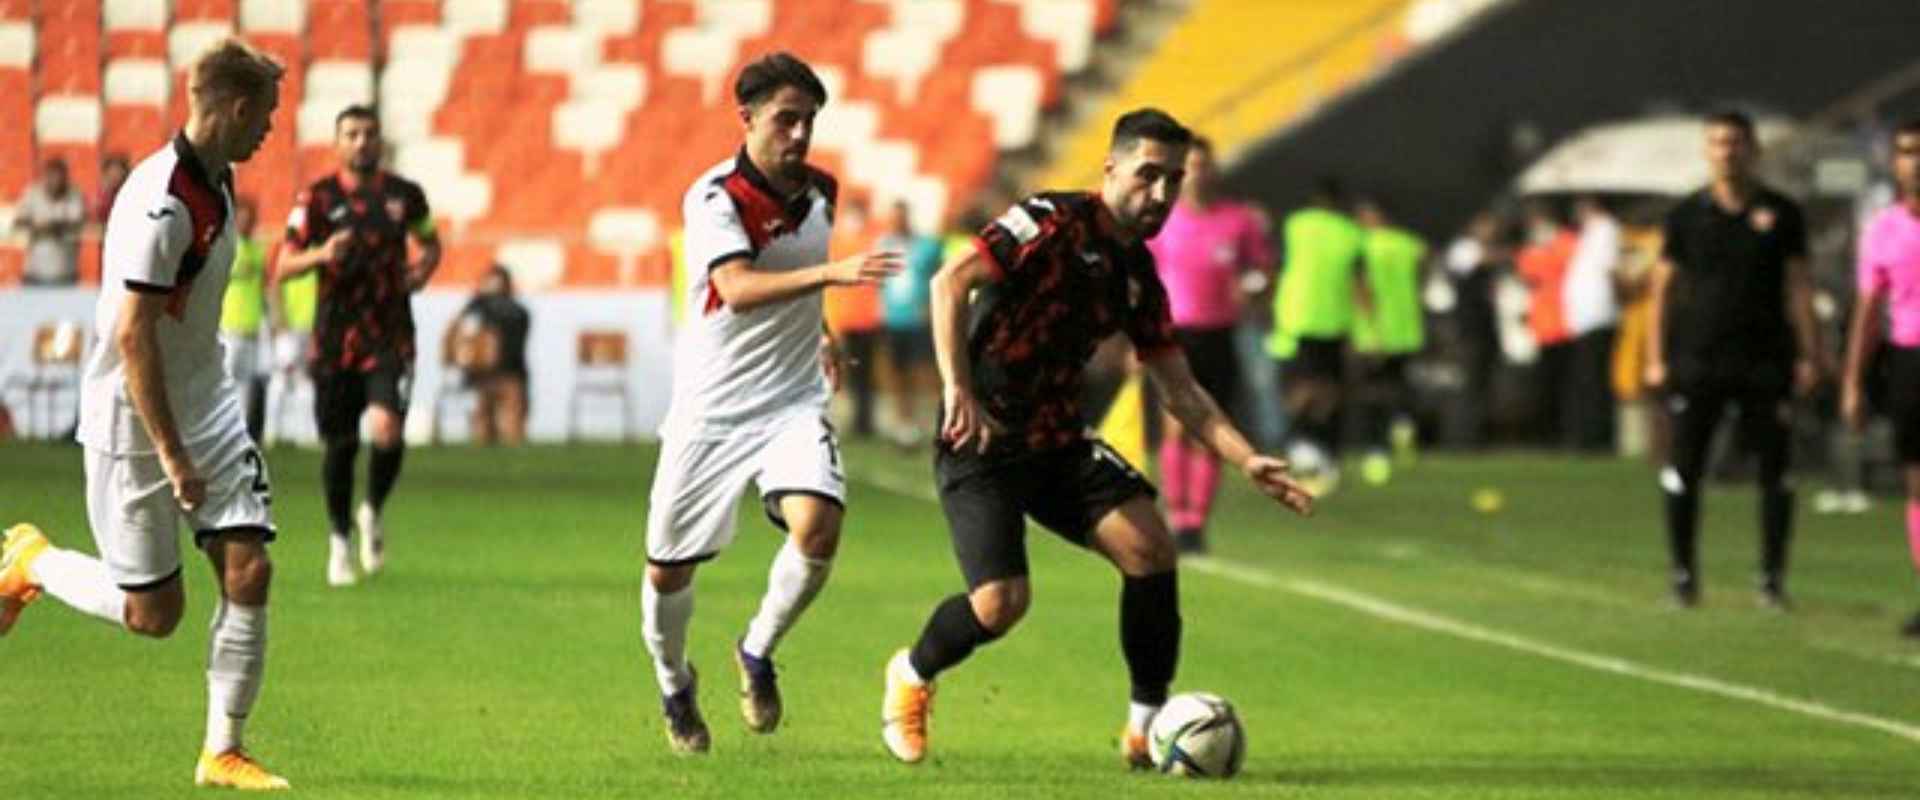 Adanaspor'umuz 0-0 Gençlerbirliği